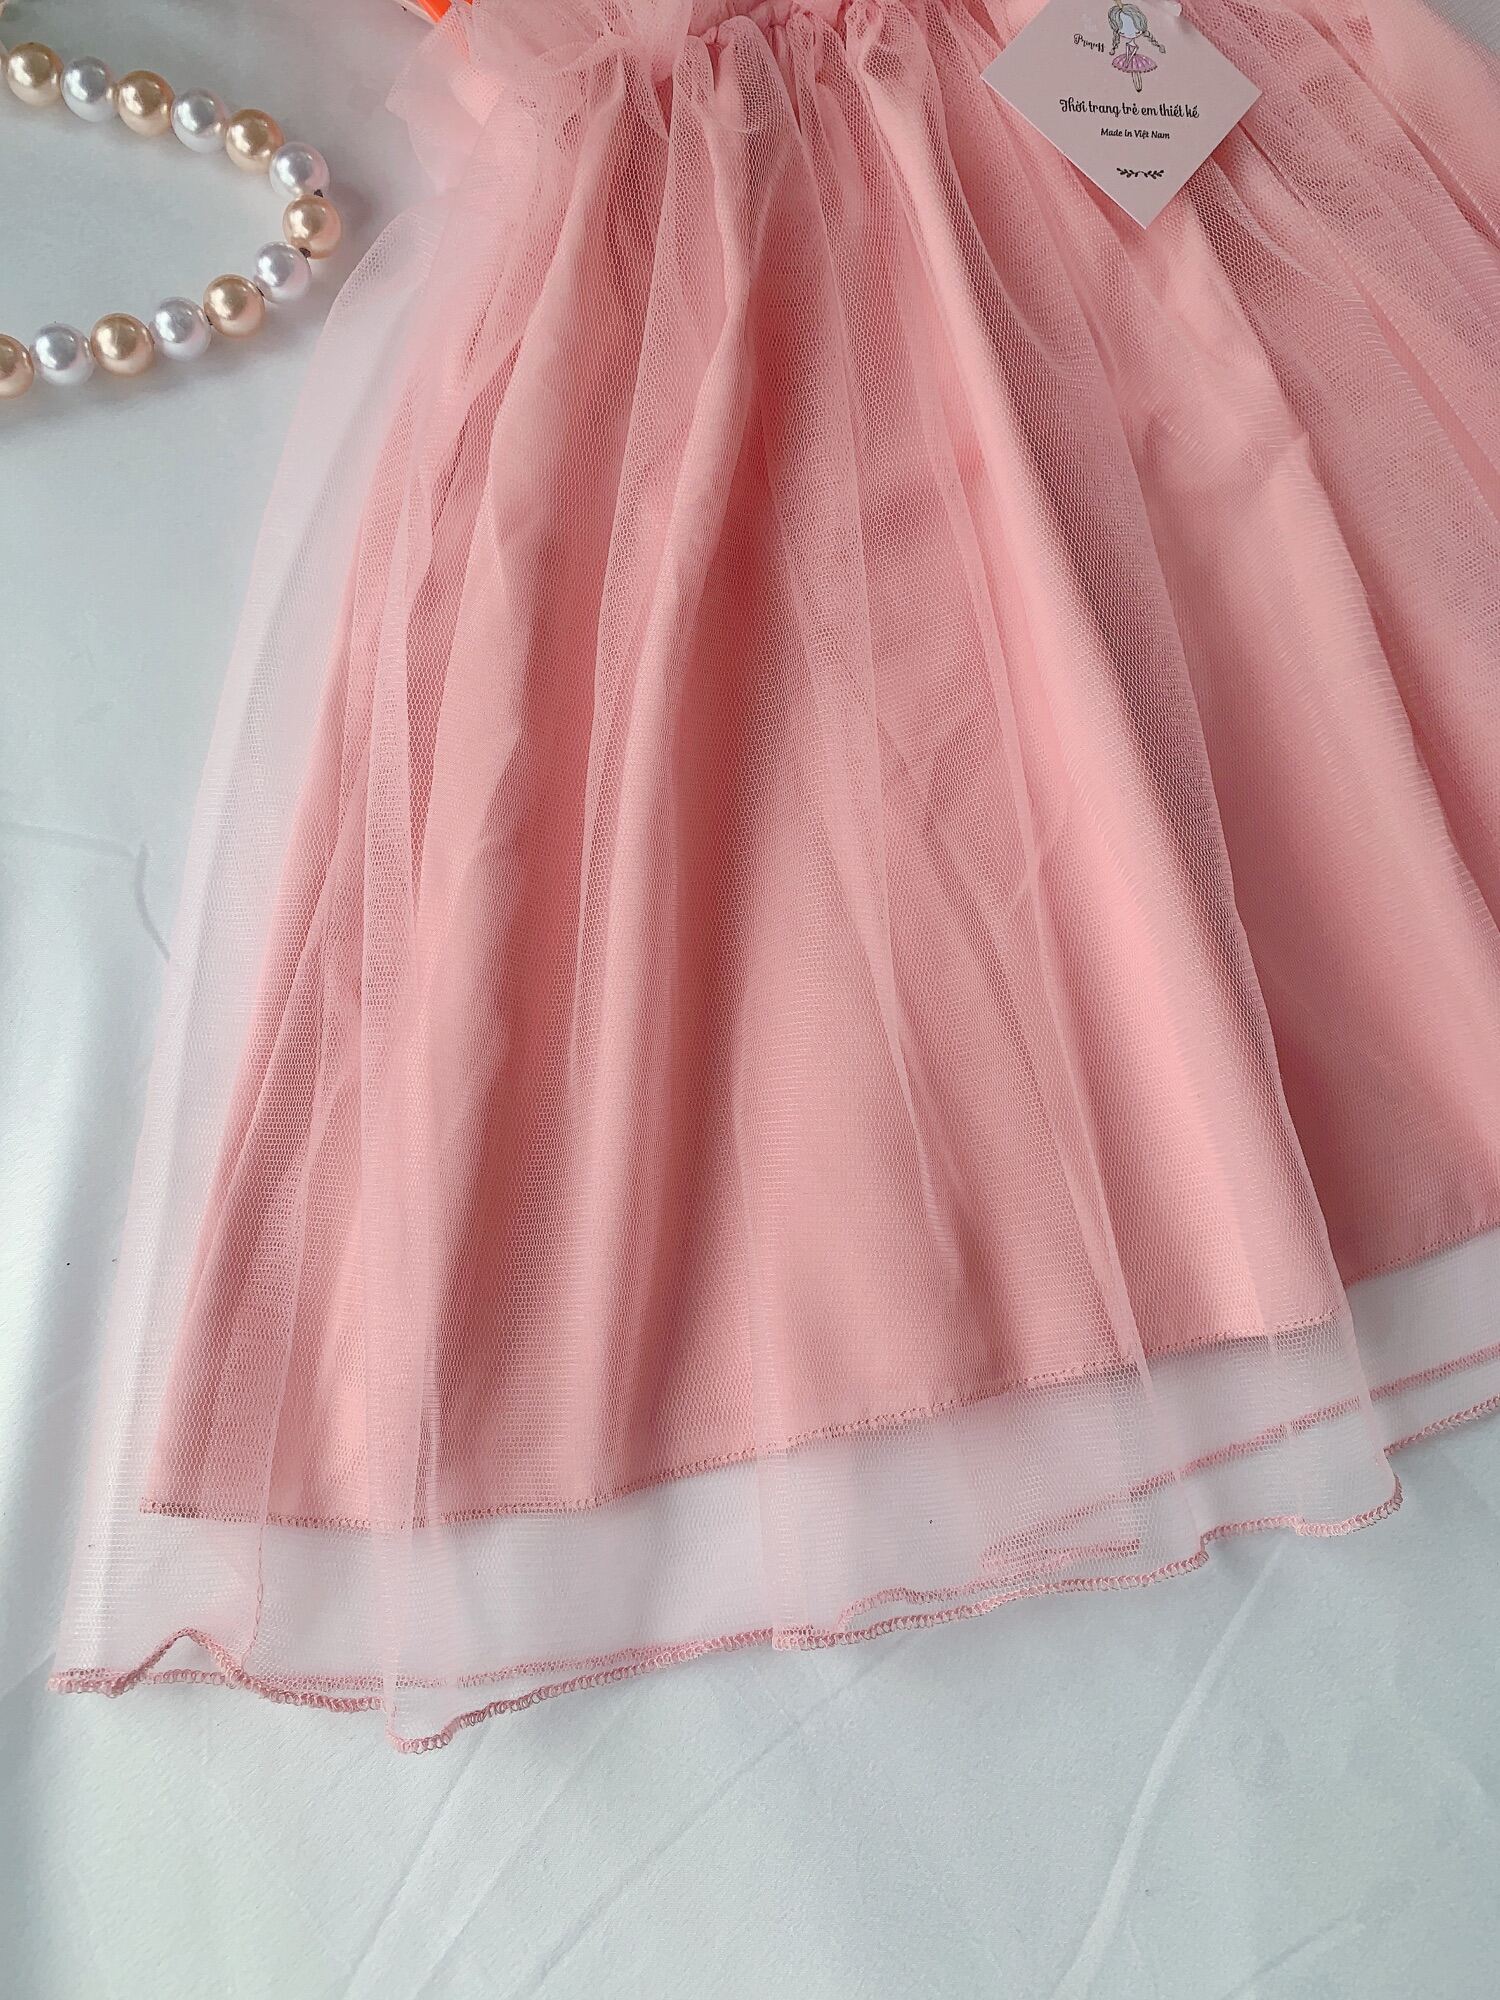 Trẻ sơ sinh Băng đô bé gái chân váy tutu quần áo giá đỡ ảnh ảnh màu hồng |  Lazada.vn